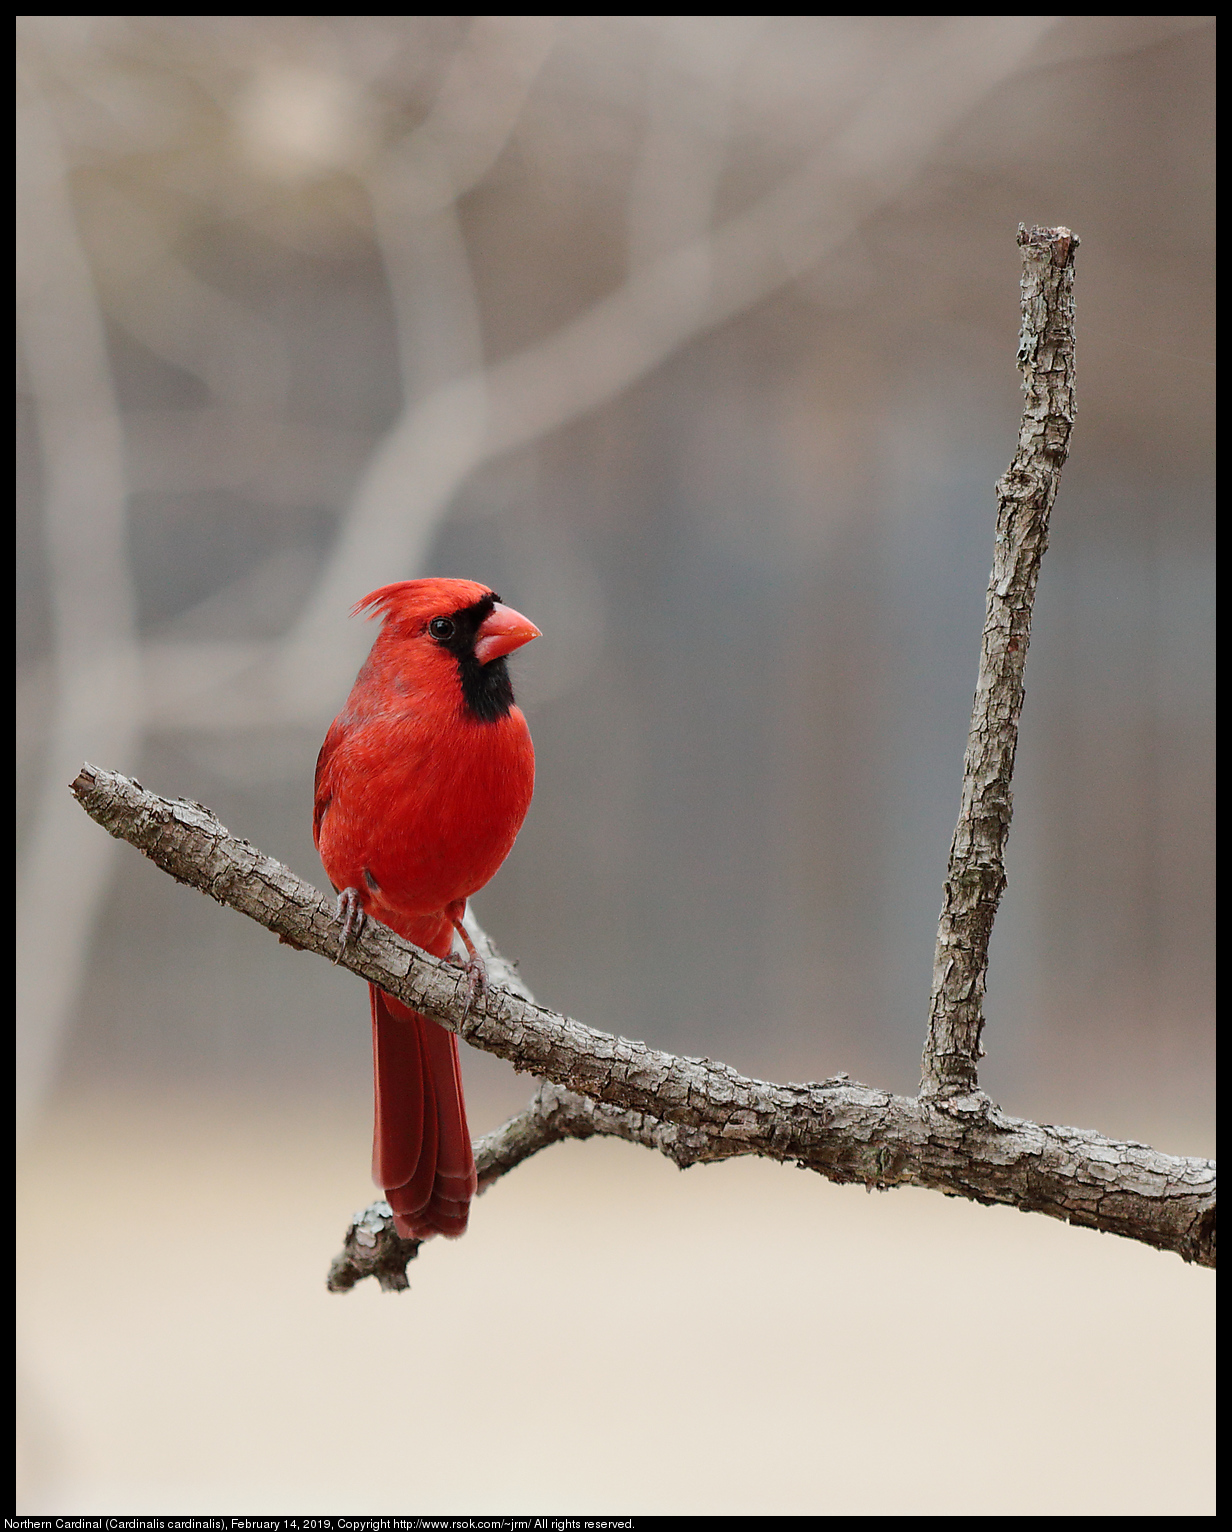 Northern Cardinal (Cardinalis cardinalis), February 14, 2019